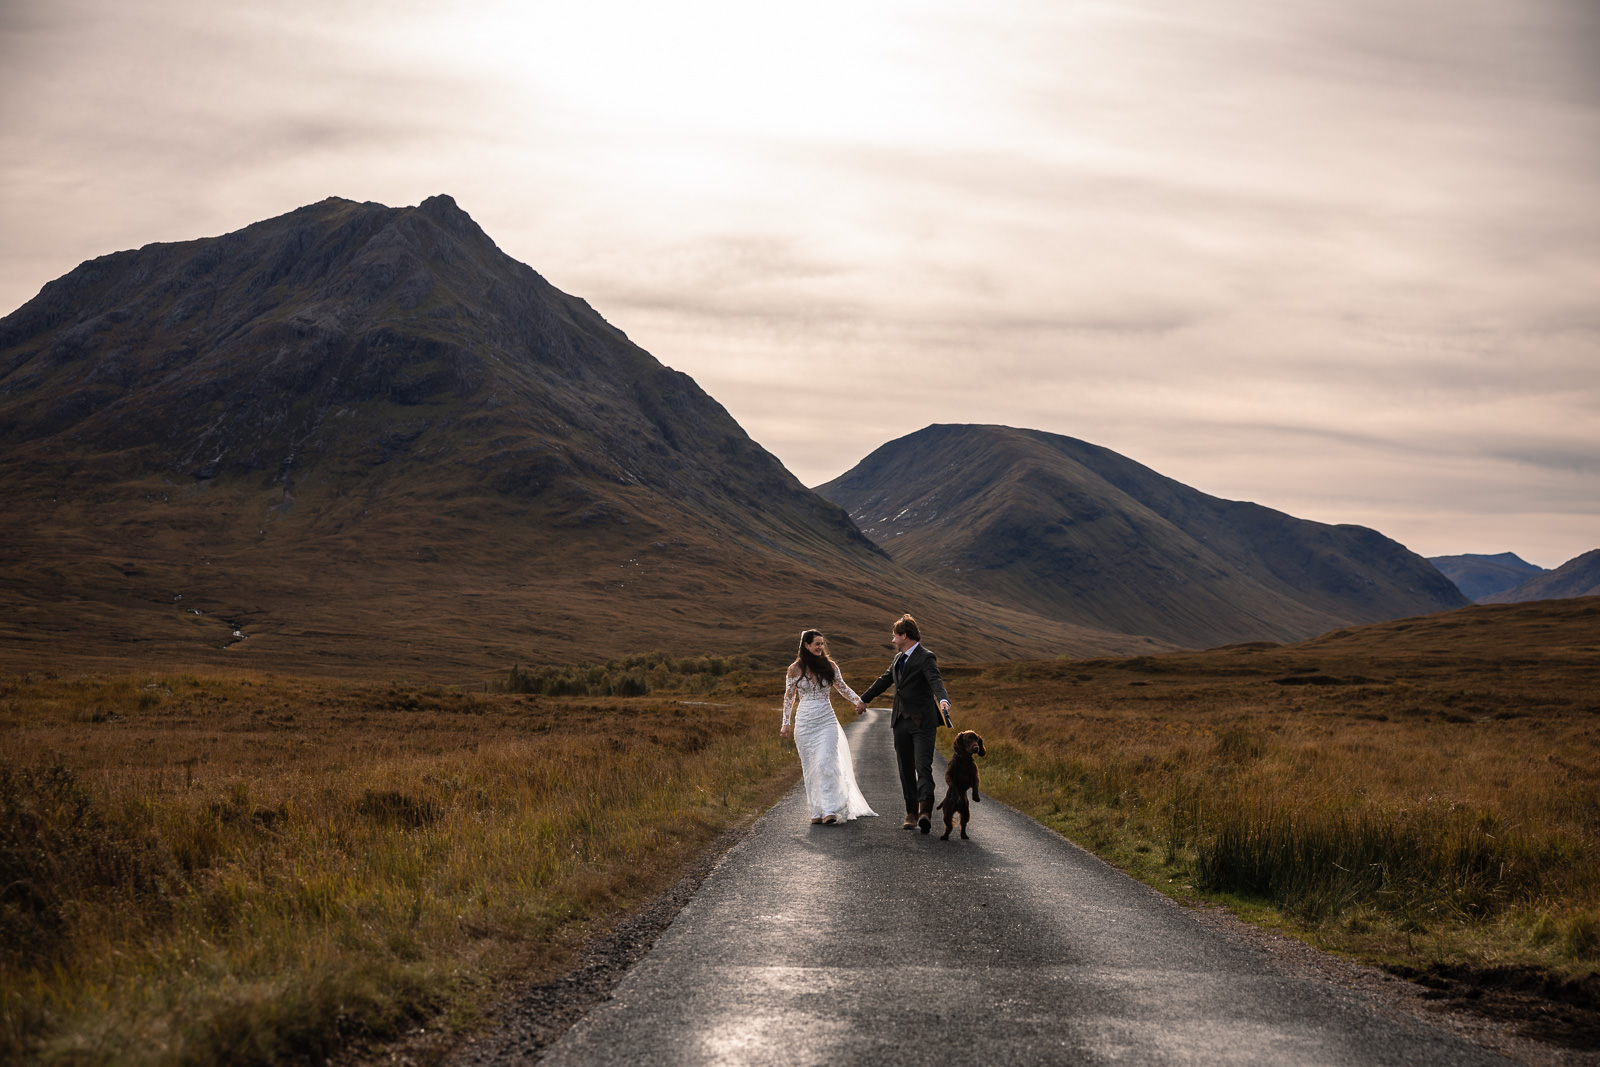 Wedding photographer Highlands Scotland Glencoe